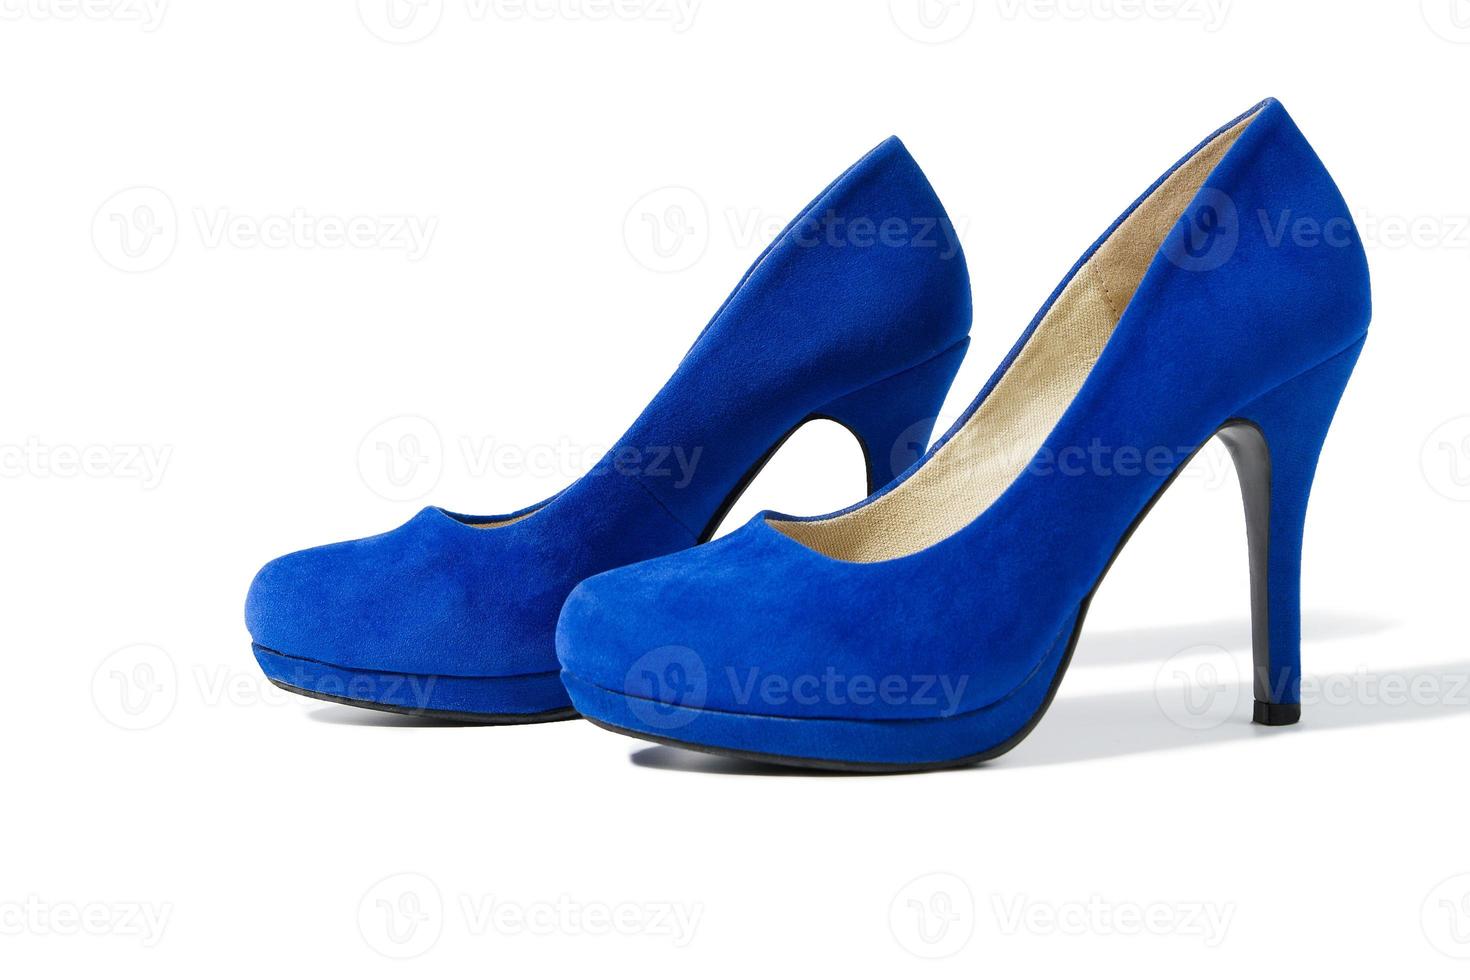 chaussures mode femme agrandi. gros talons hauts paire chaussures femmes isolés sur fond blanc. élégantes chaussures bleues féminines de luxe au sol. teinte suède élégante. mise au point sélective. photo